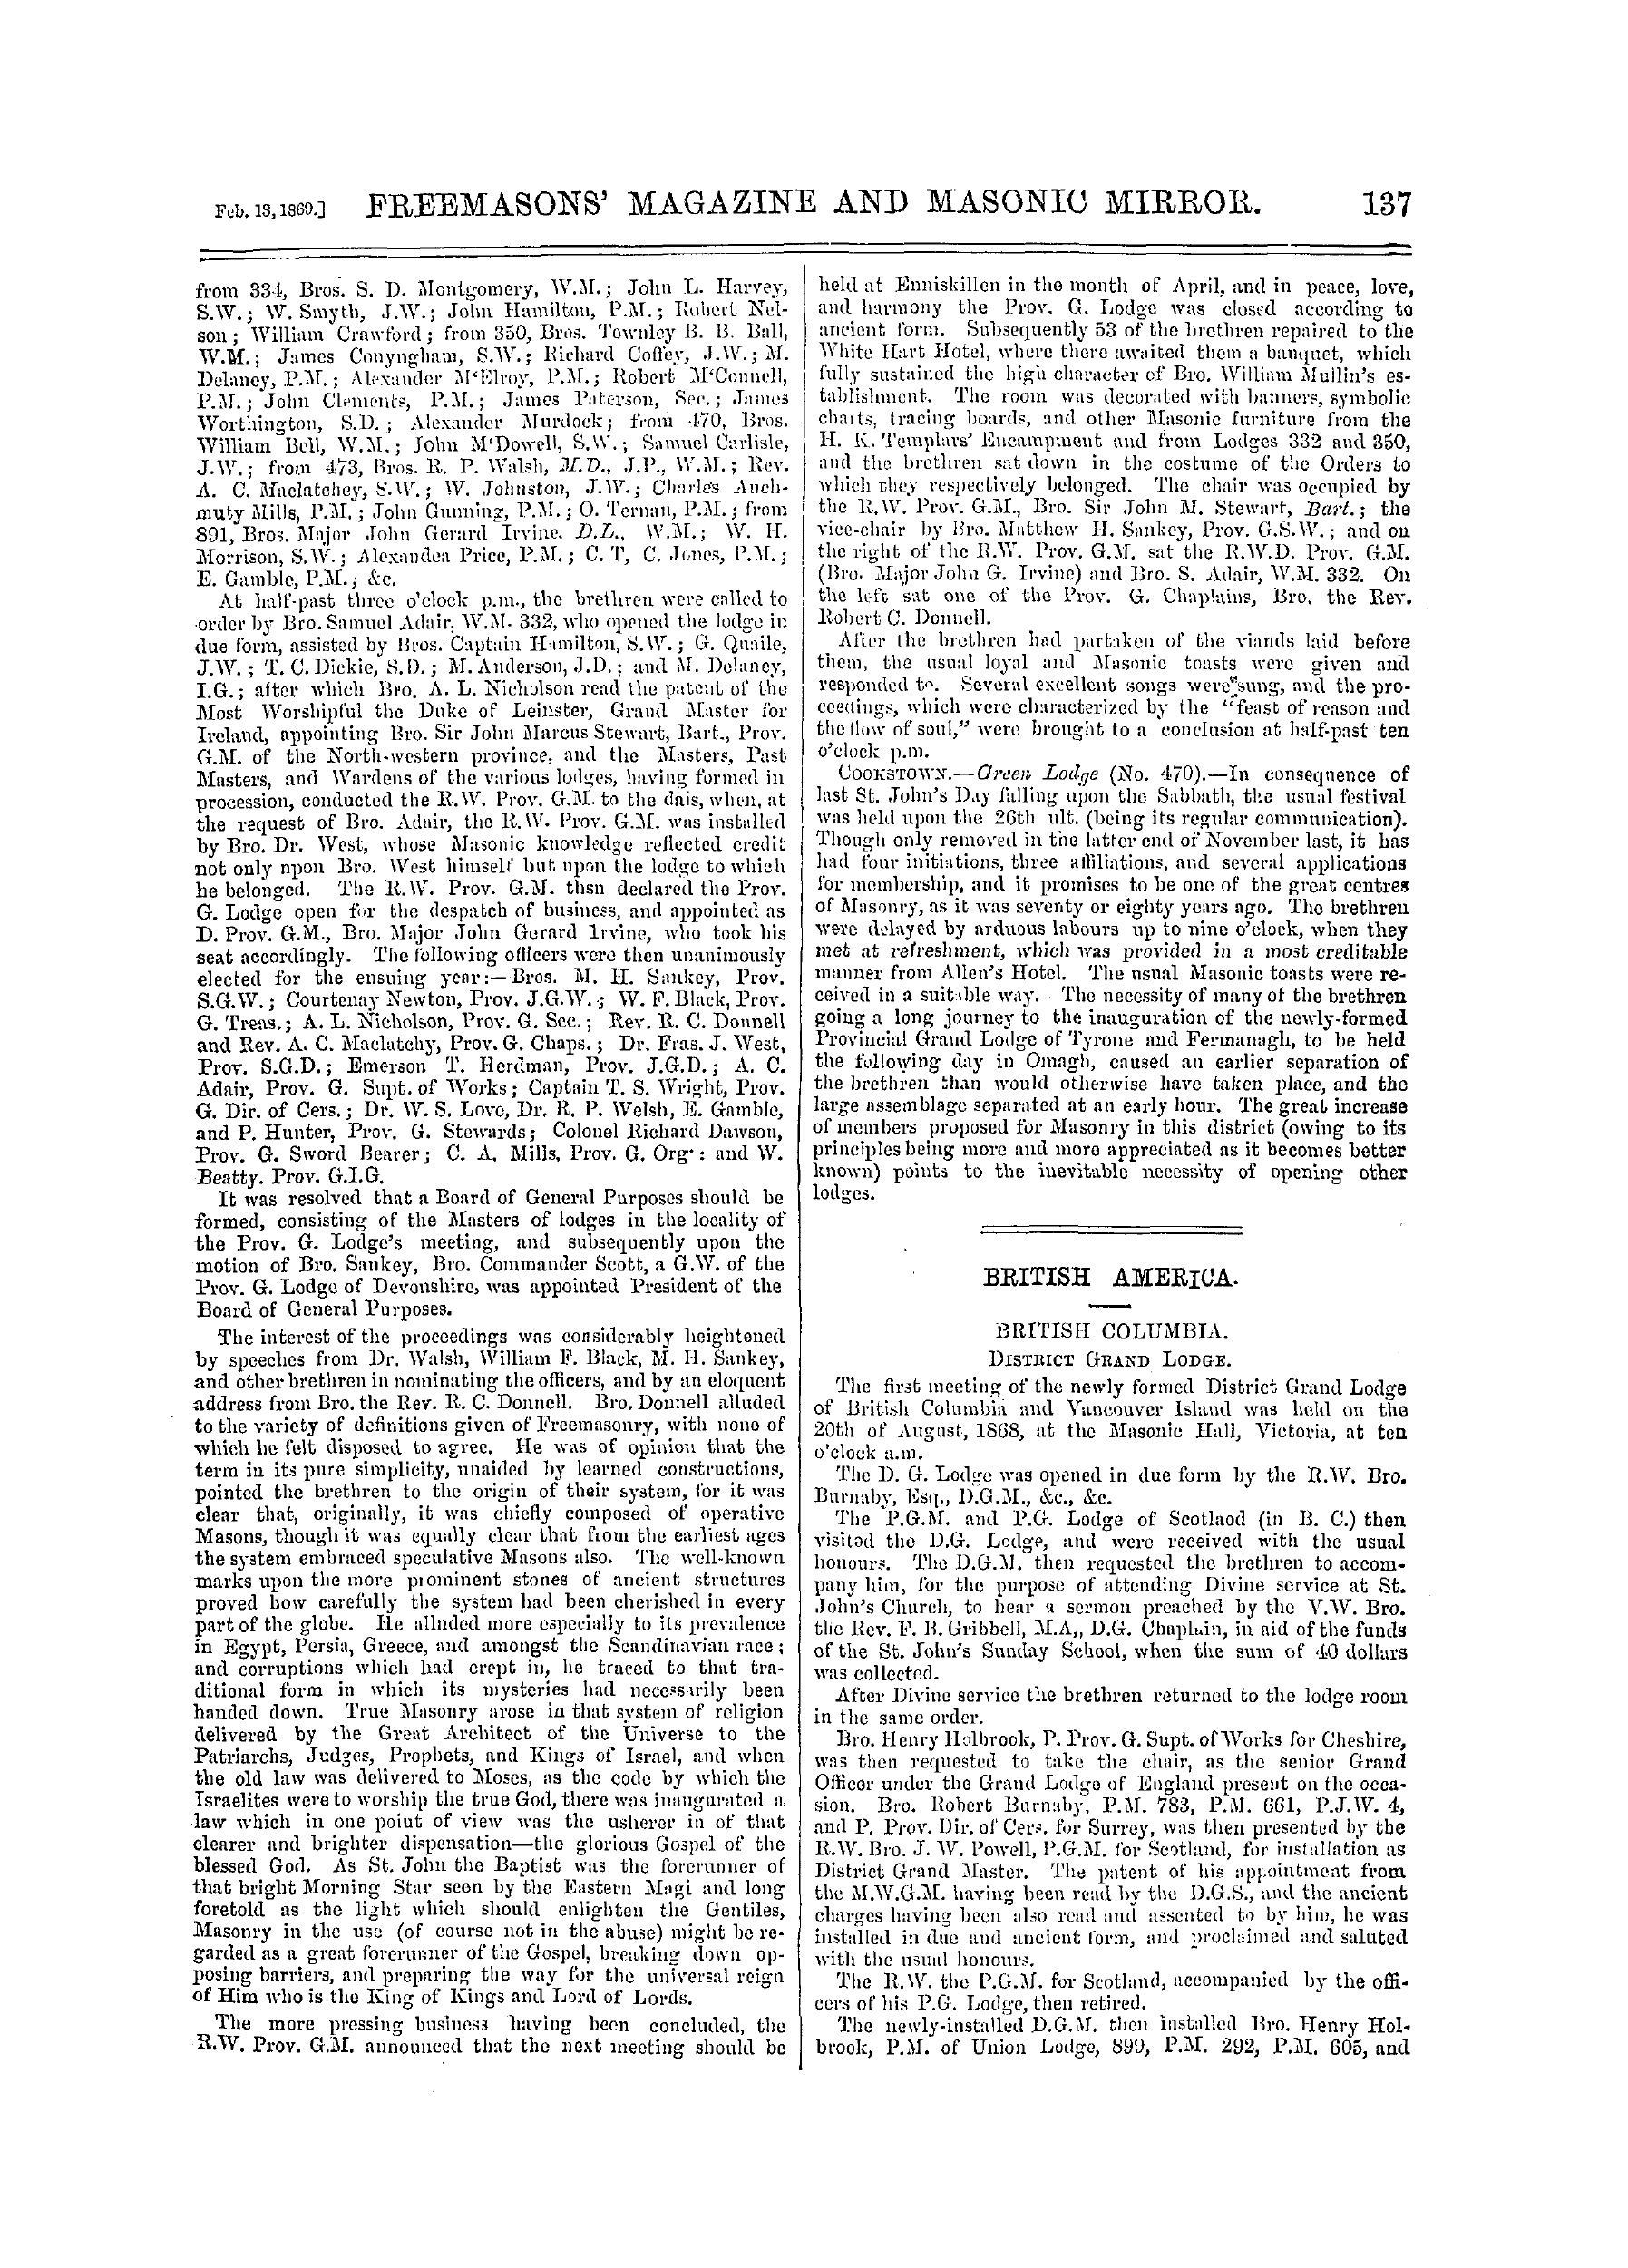 The Freemasons' Monthly Magazine: 1869-02-13 - British America.